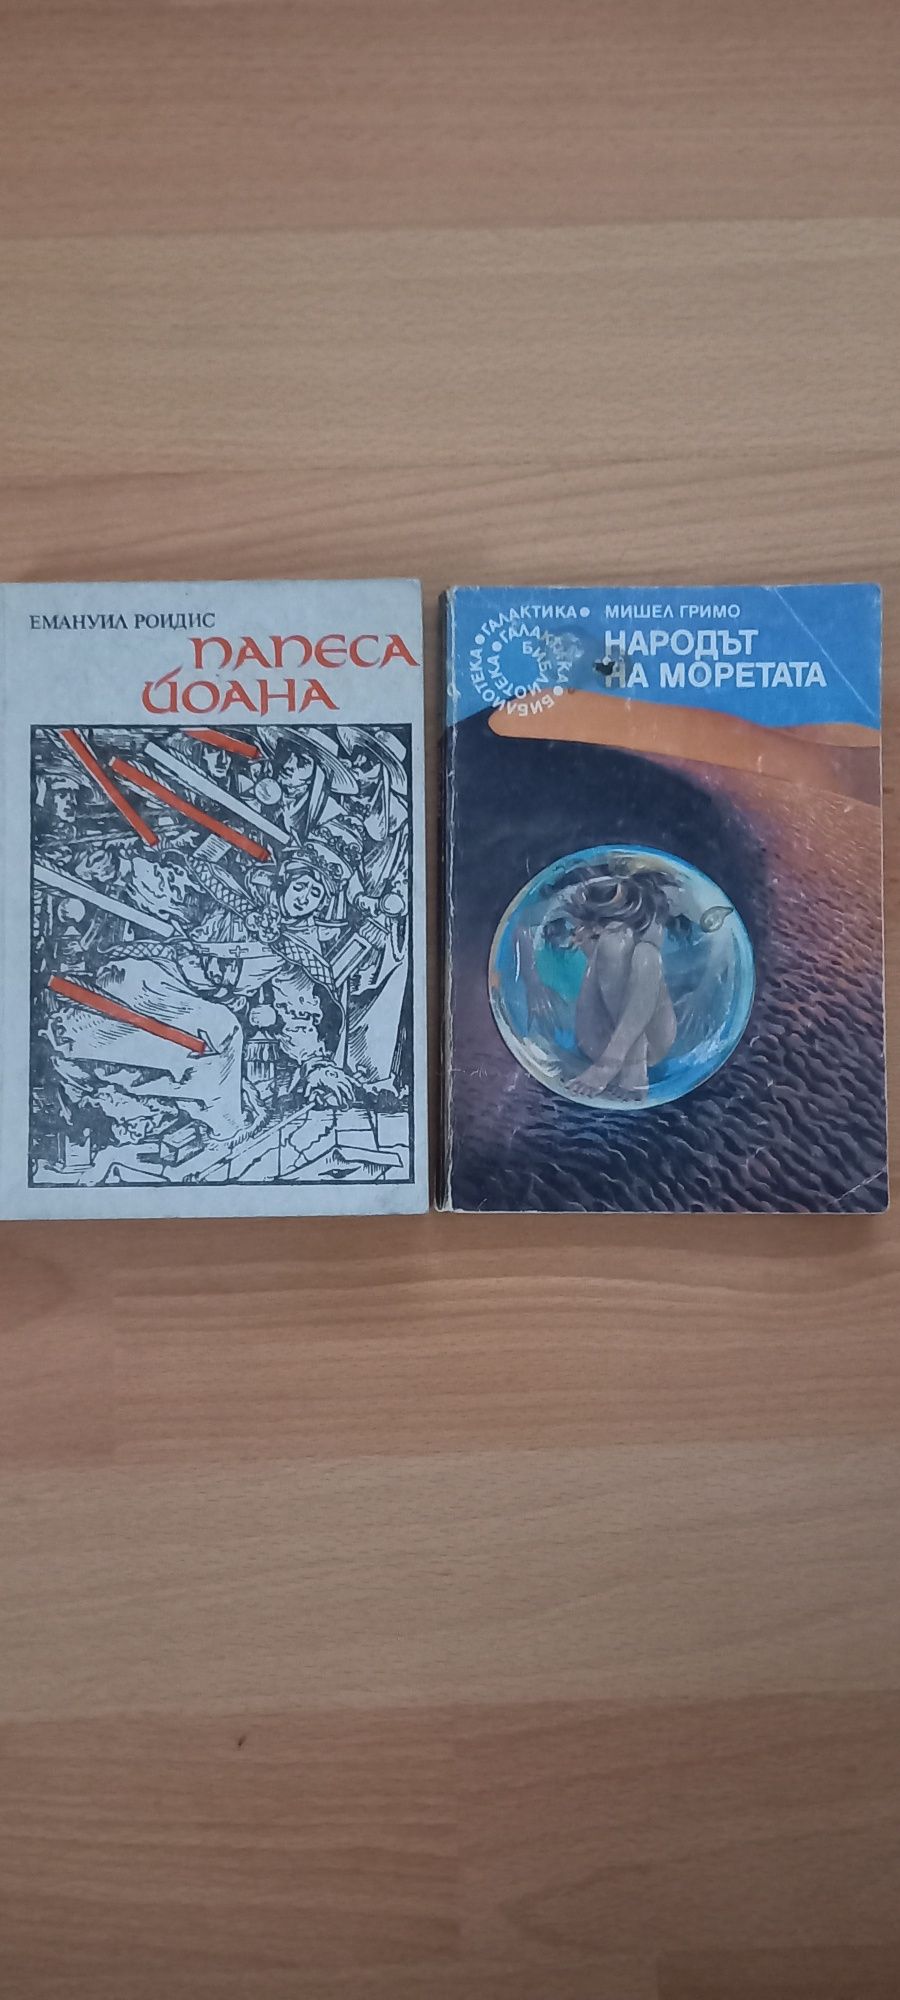 Книги на български и английски език.